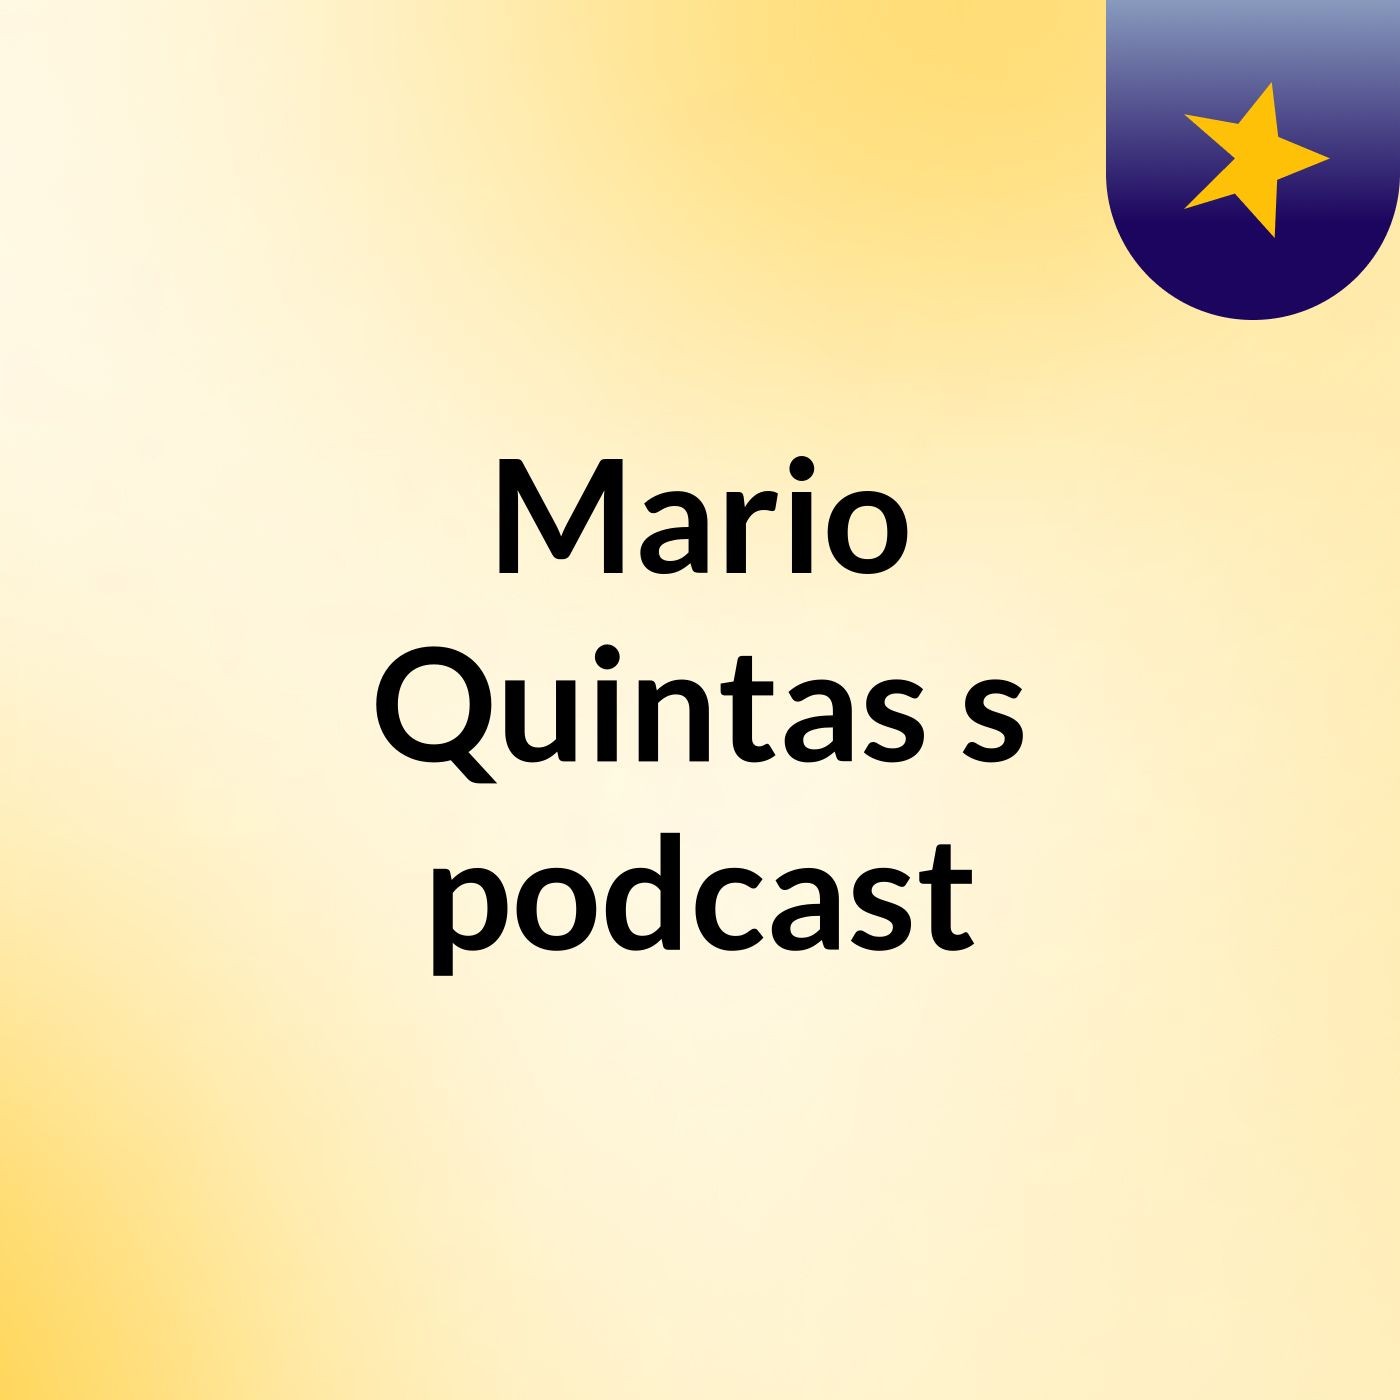 Mario Quintas's podcast